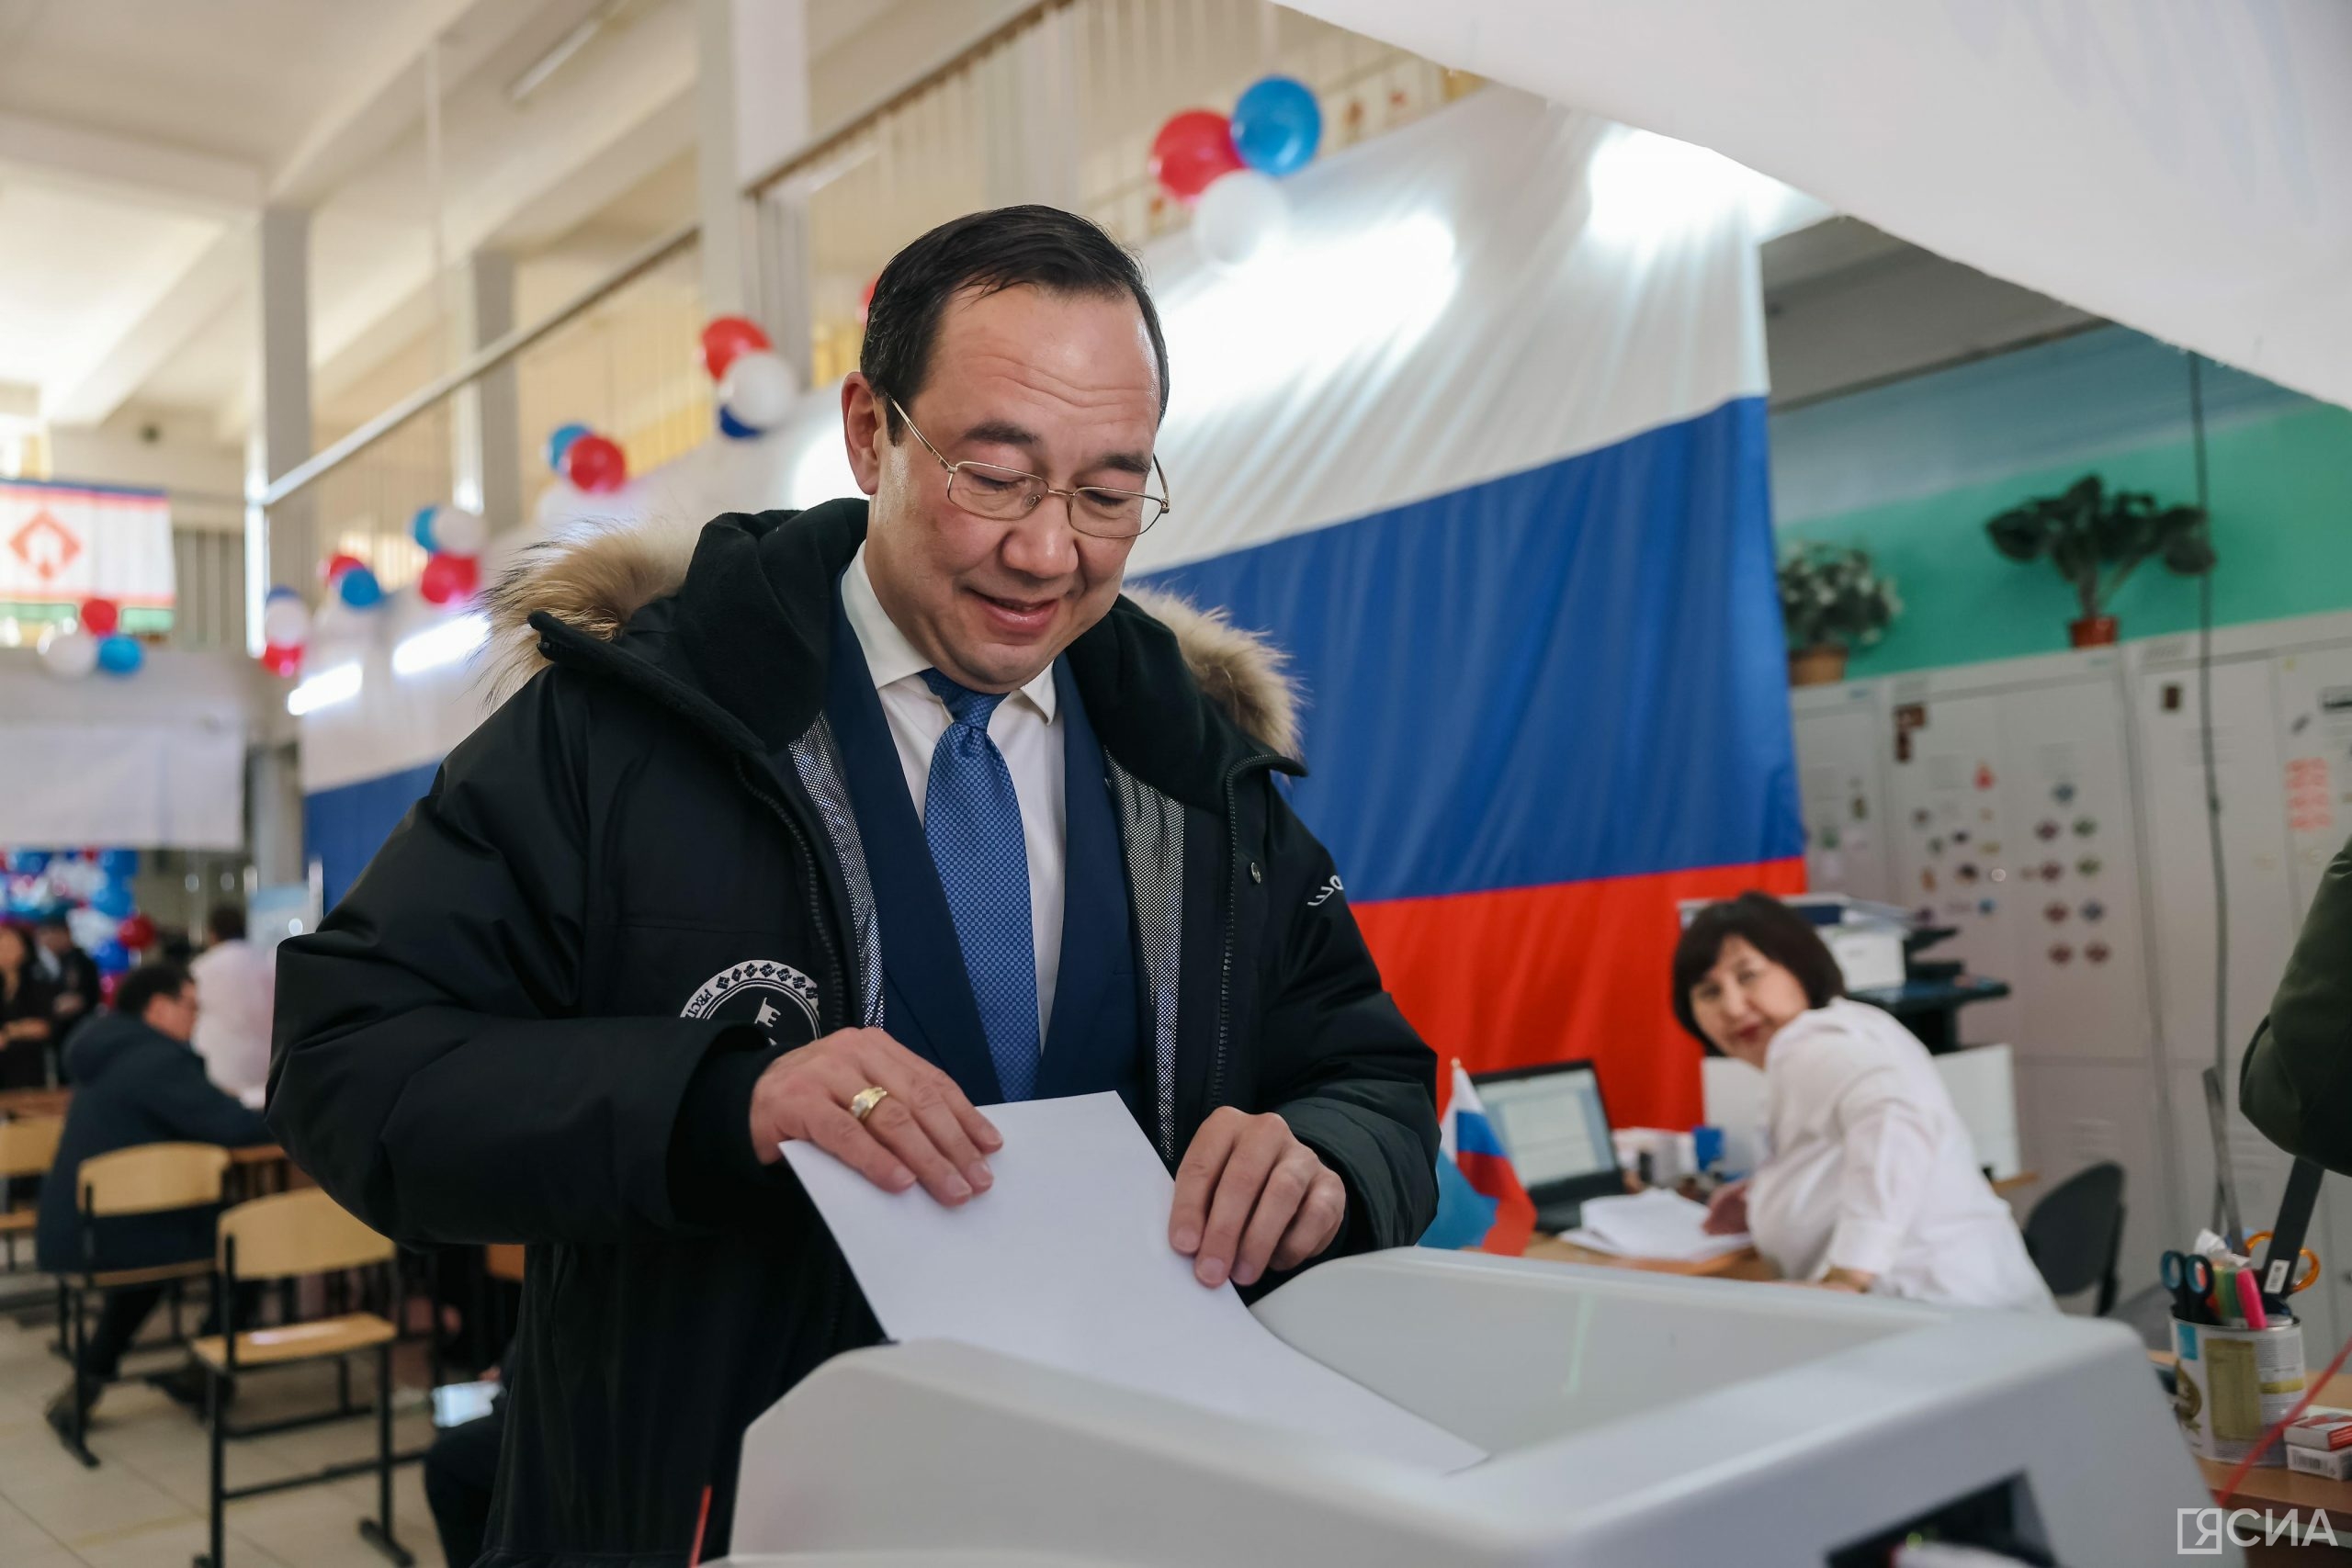 Айсен Николаев проголосовал на выборах президента России